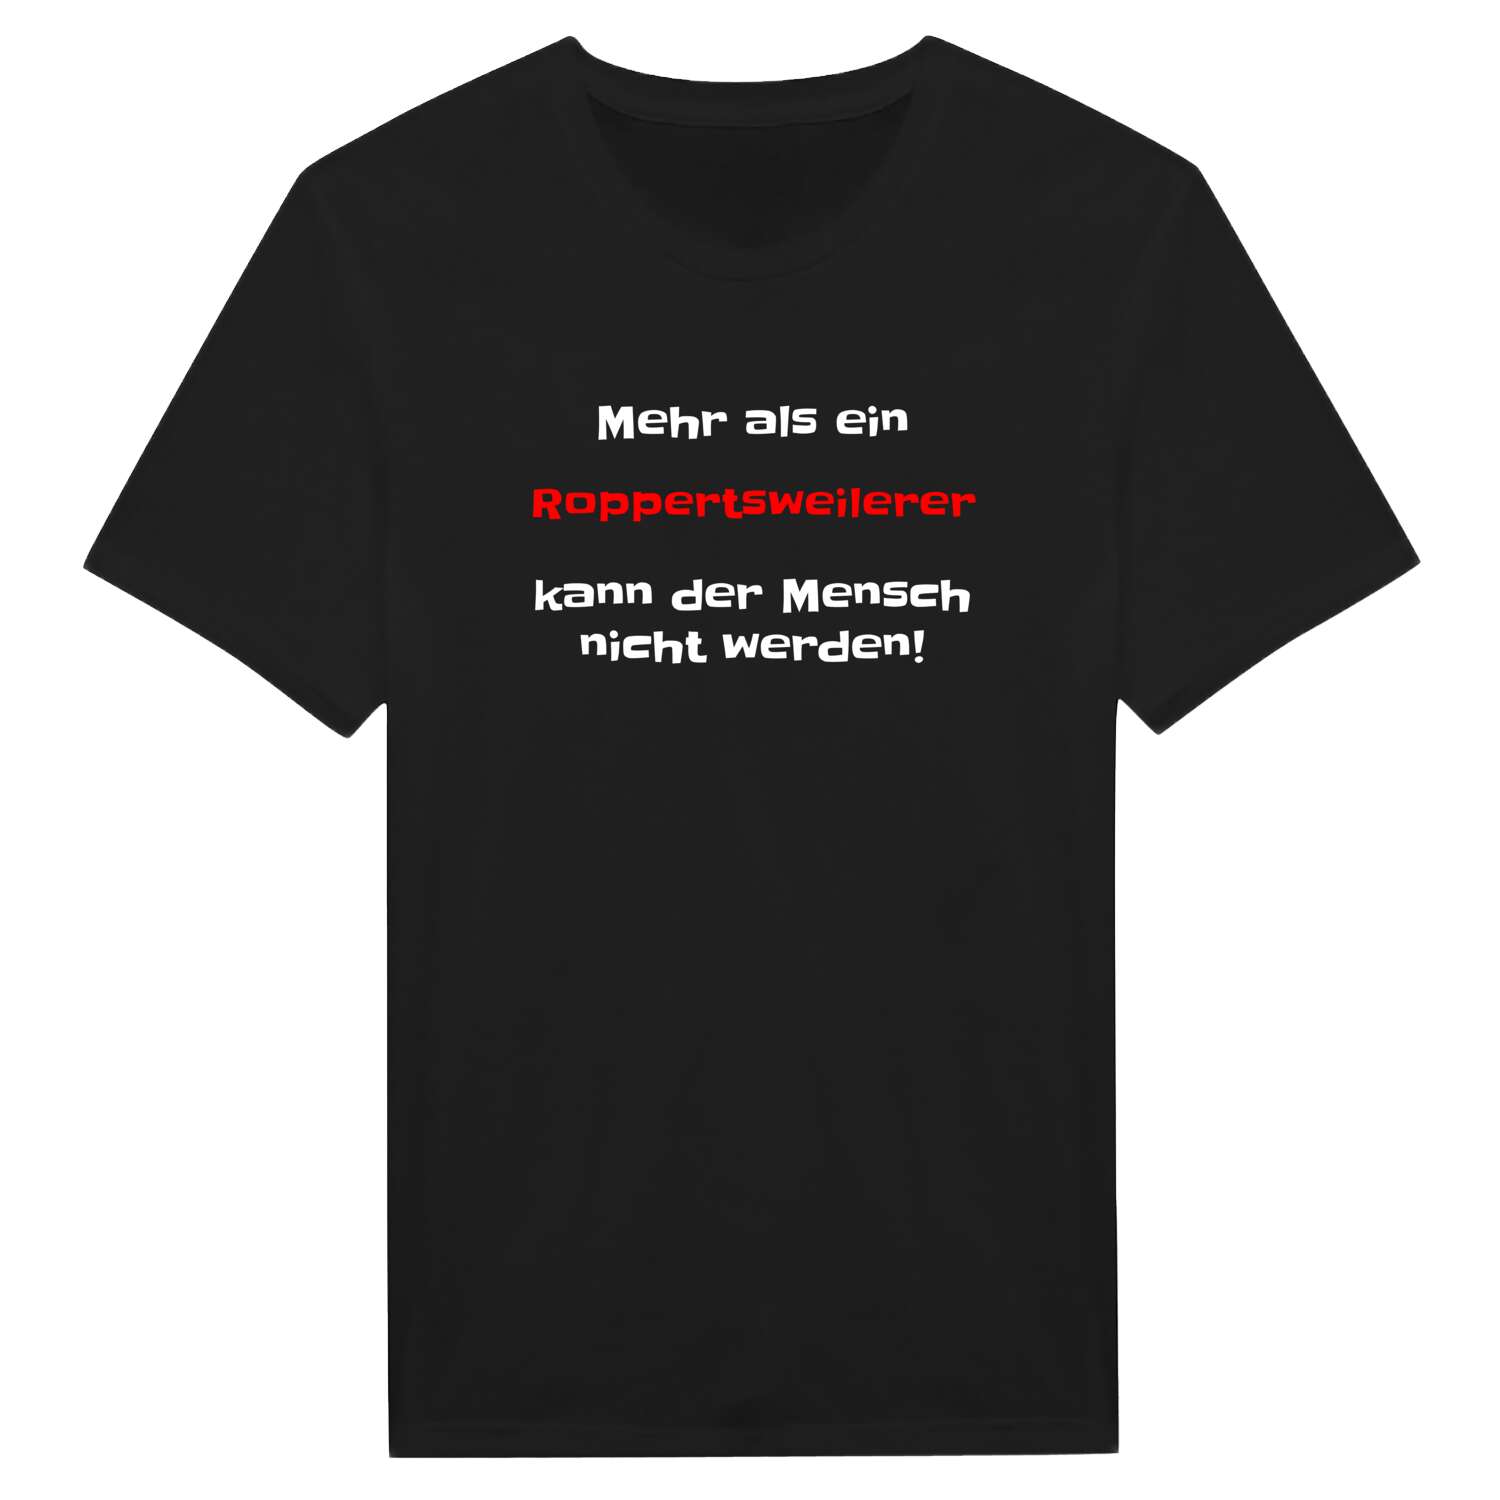 Roppertsweiler T-Shirt »Mehr als ein«